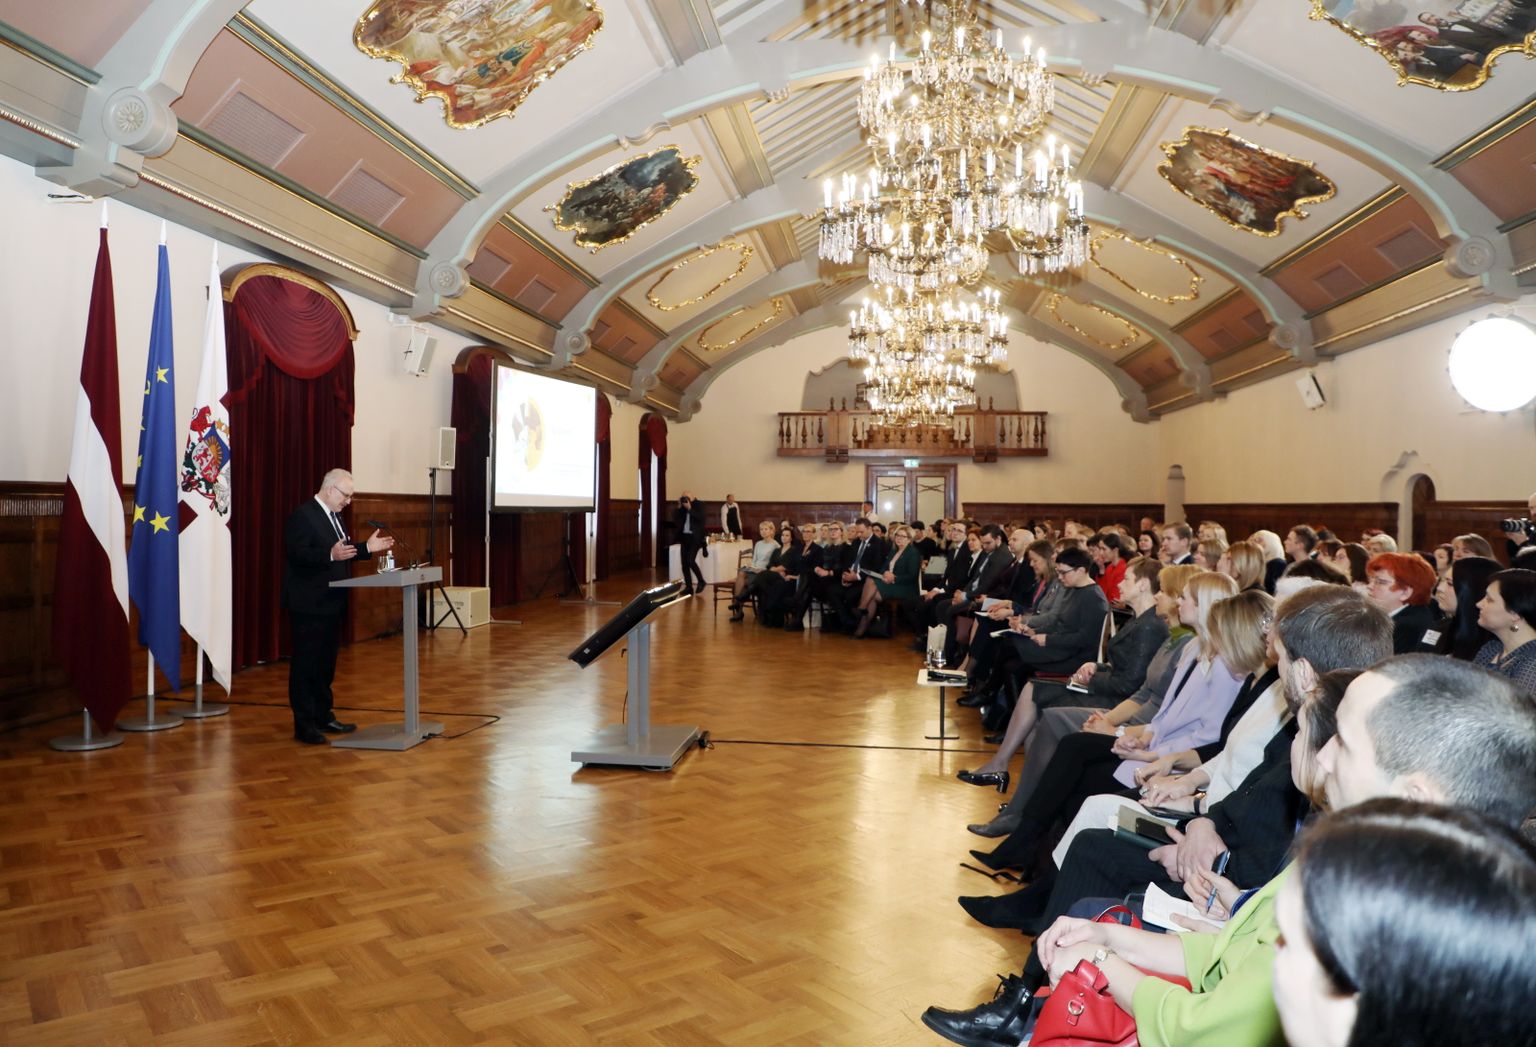 Президент Эгил Левитс выступает на мероприятии "Демократия и гражданское общество в Латвии и Европе"